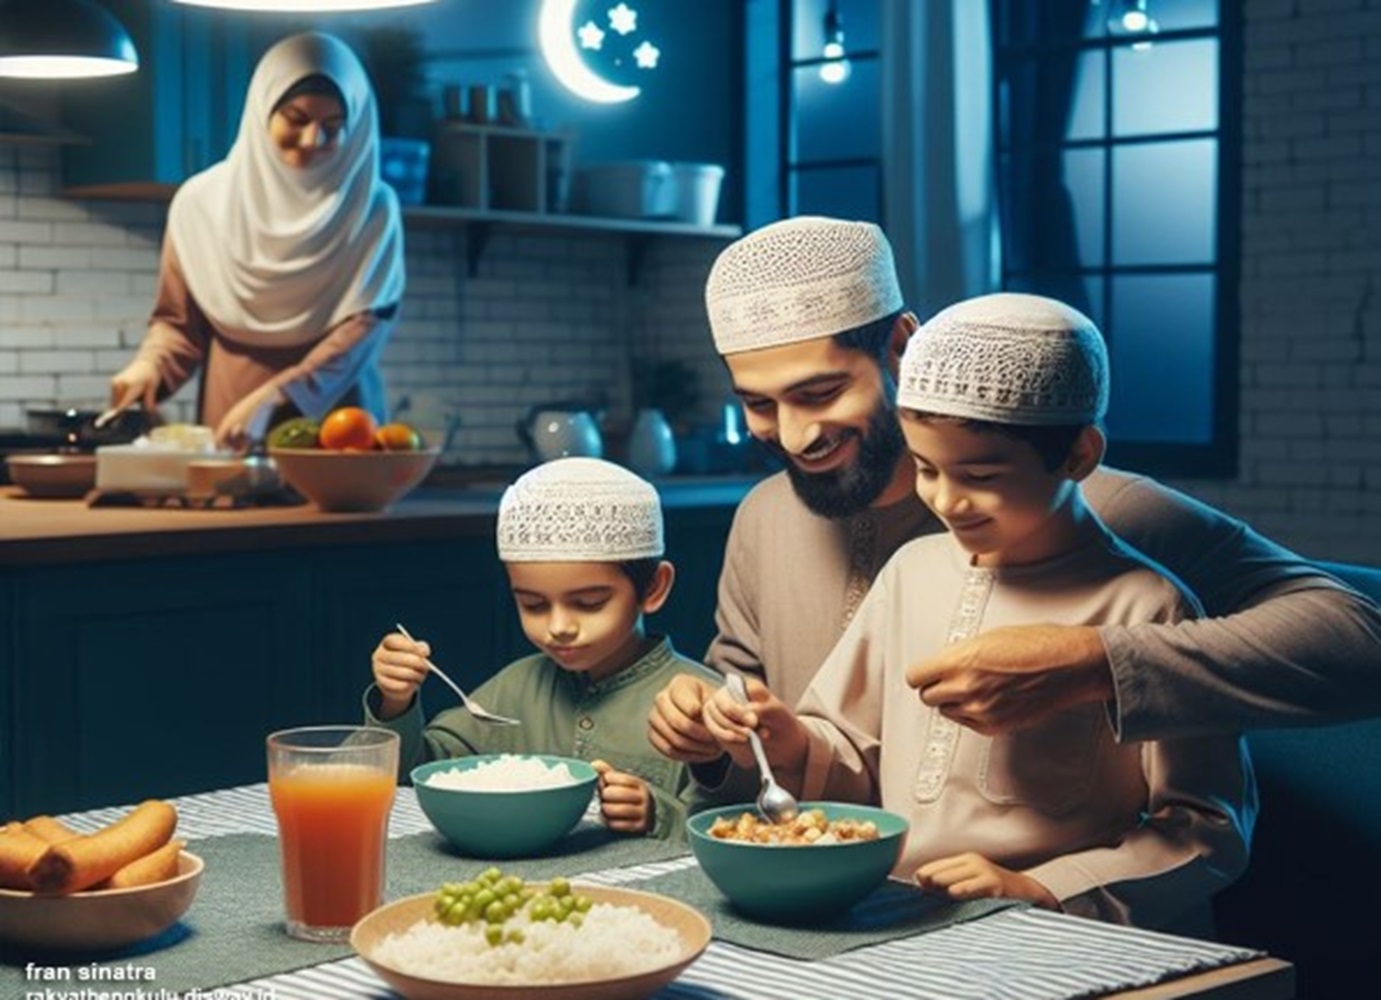 Ini 8 Tips Menjaga Kesehatan Bagi Pekerja saat Ramadhan, Makan Sahur dan Buka Puasa Tepat Waktu